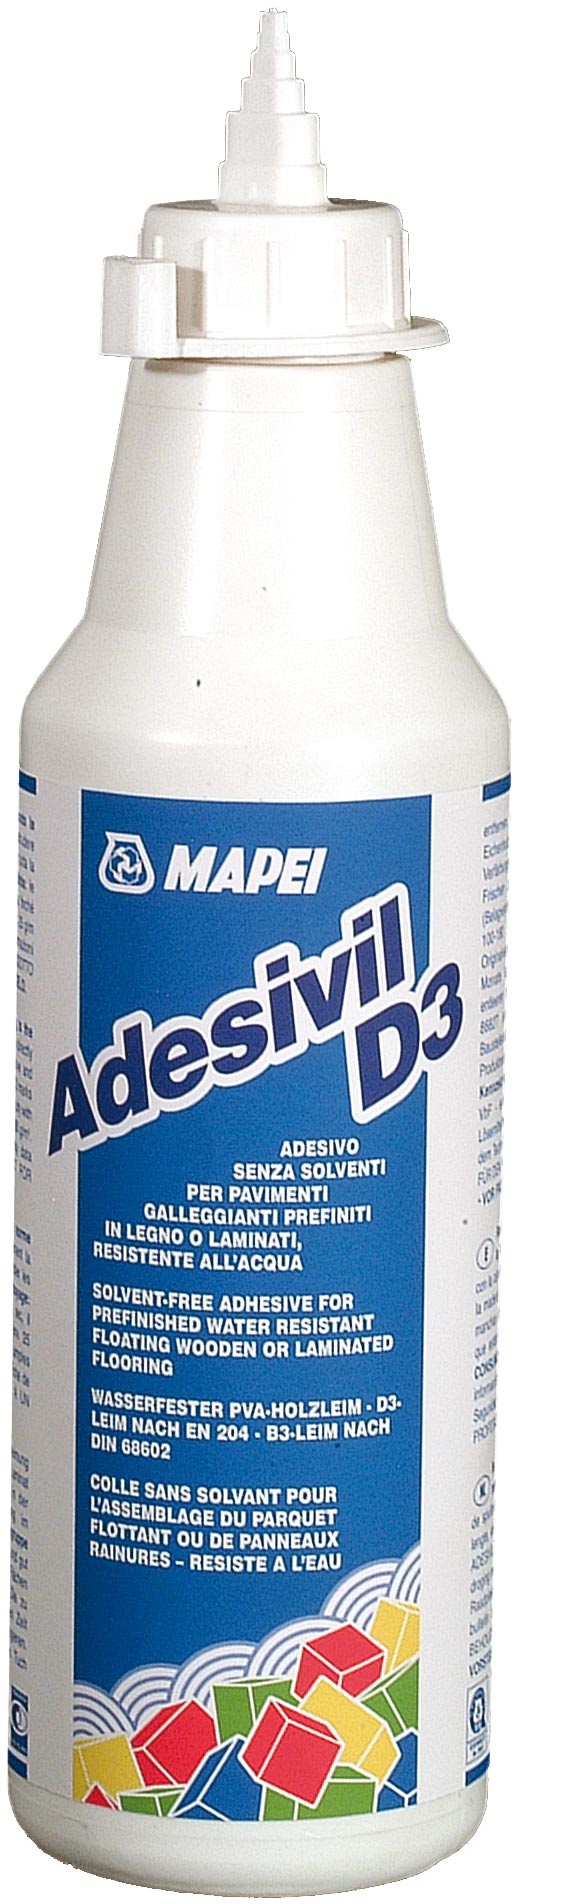 Adesivil D3 (LF) - 0.5 kg